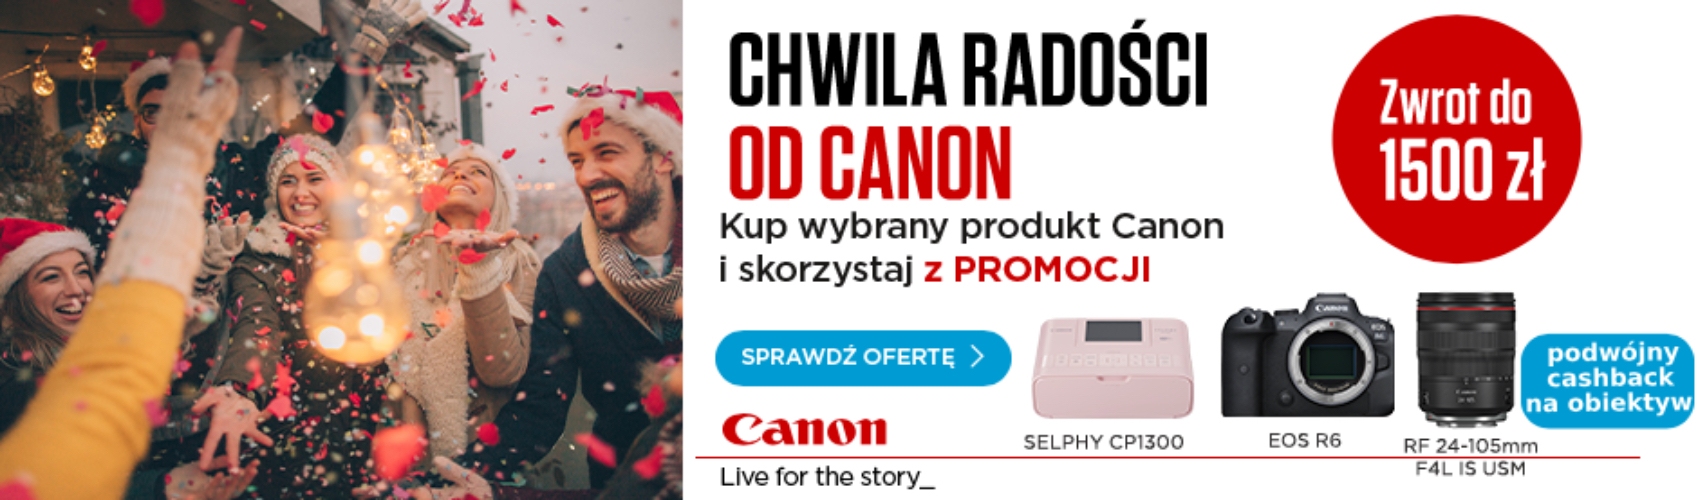 Poczuj chwile radości od Canon i zyskaj do 1500 zł w cashbacku